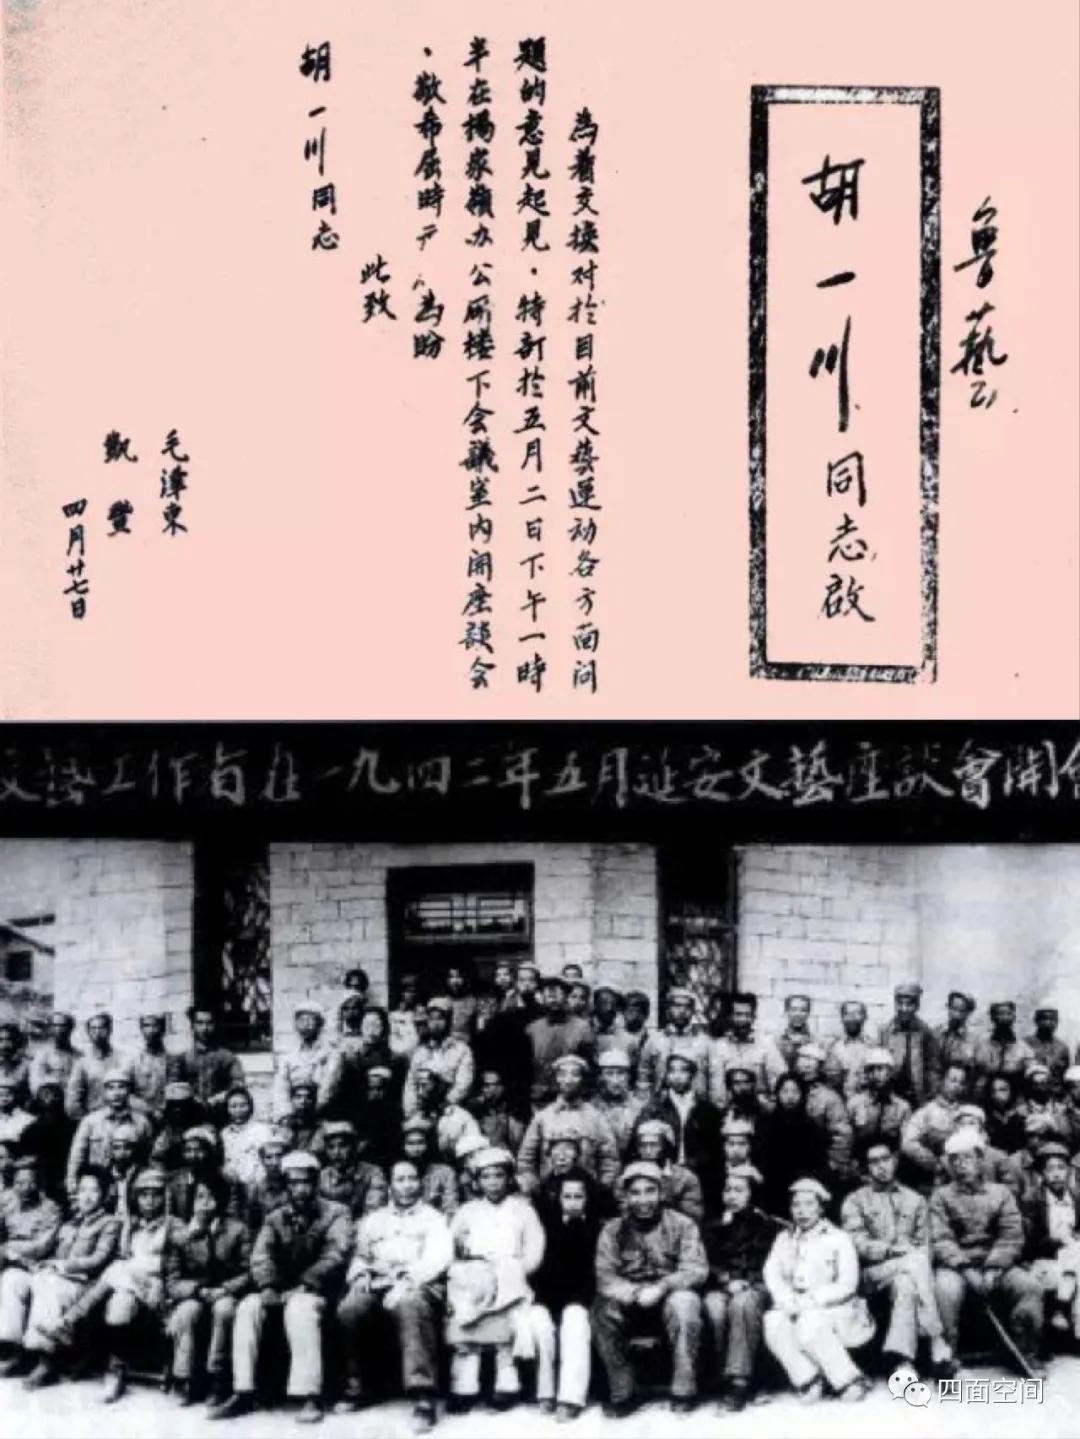 来源于网络(上)彦涵《当敌人搜山的时候》( 1943)(中)古元《减租会》